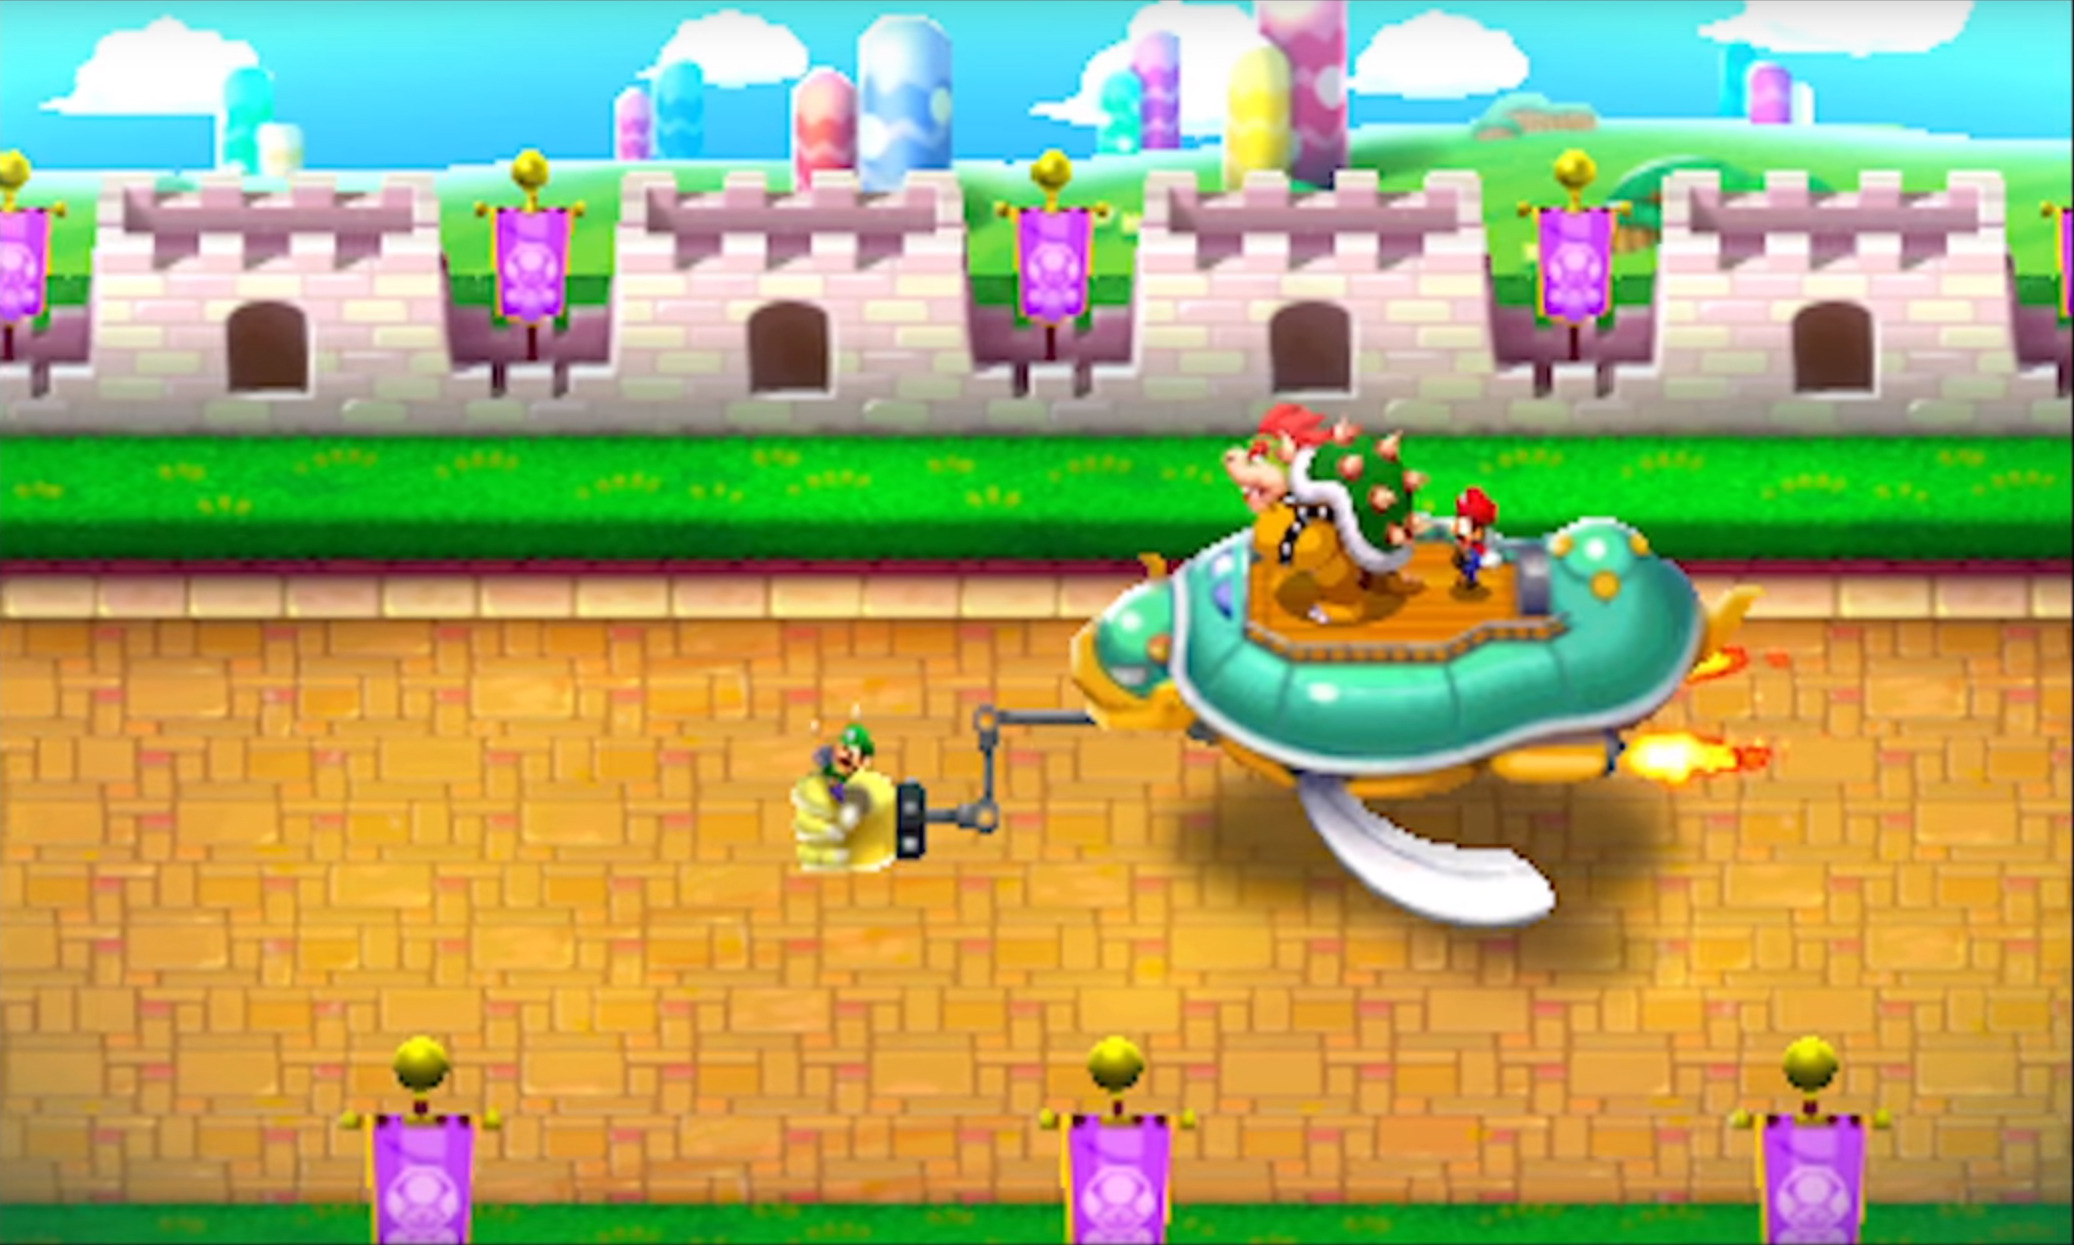 Mario and luigi saga. Mario and Luigi Superstar Saga. Mario Luigi Superstar Saga 3ds. Mario and Luigi: Superstar Saga 3ds bowlletta. Mario Luigi Superstar Saga GBA.